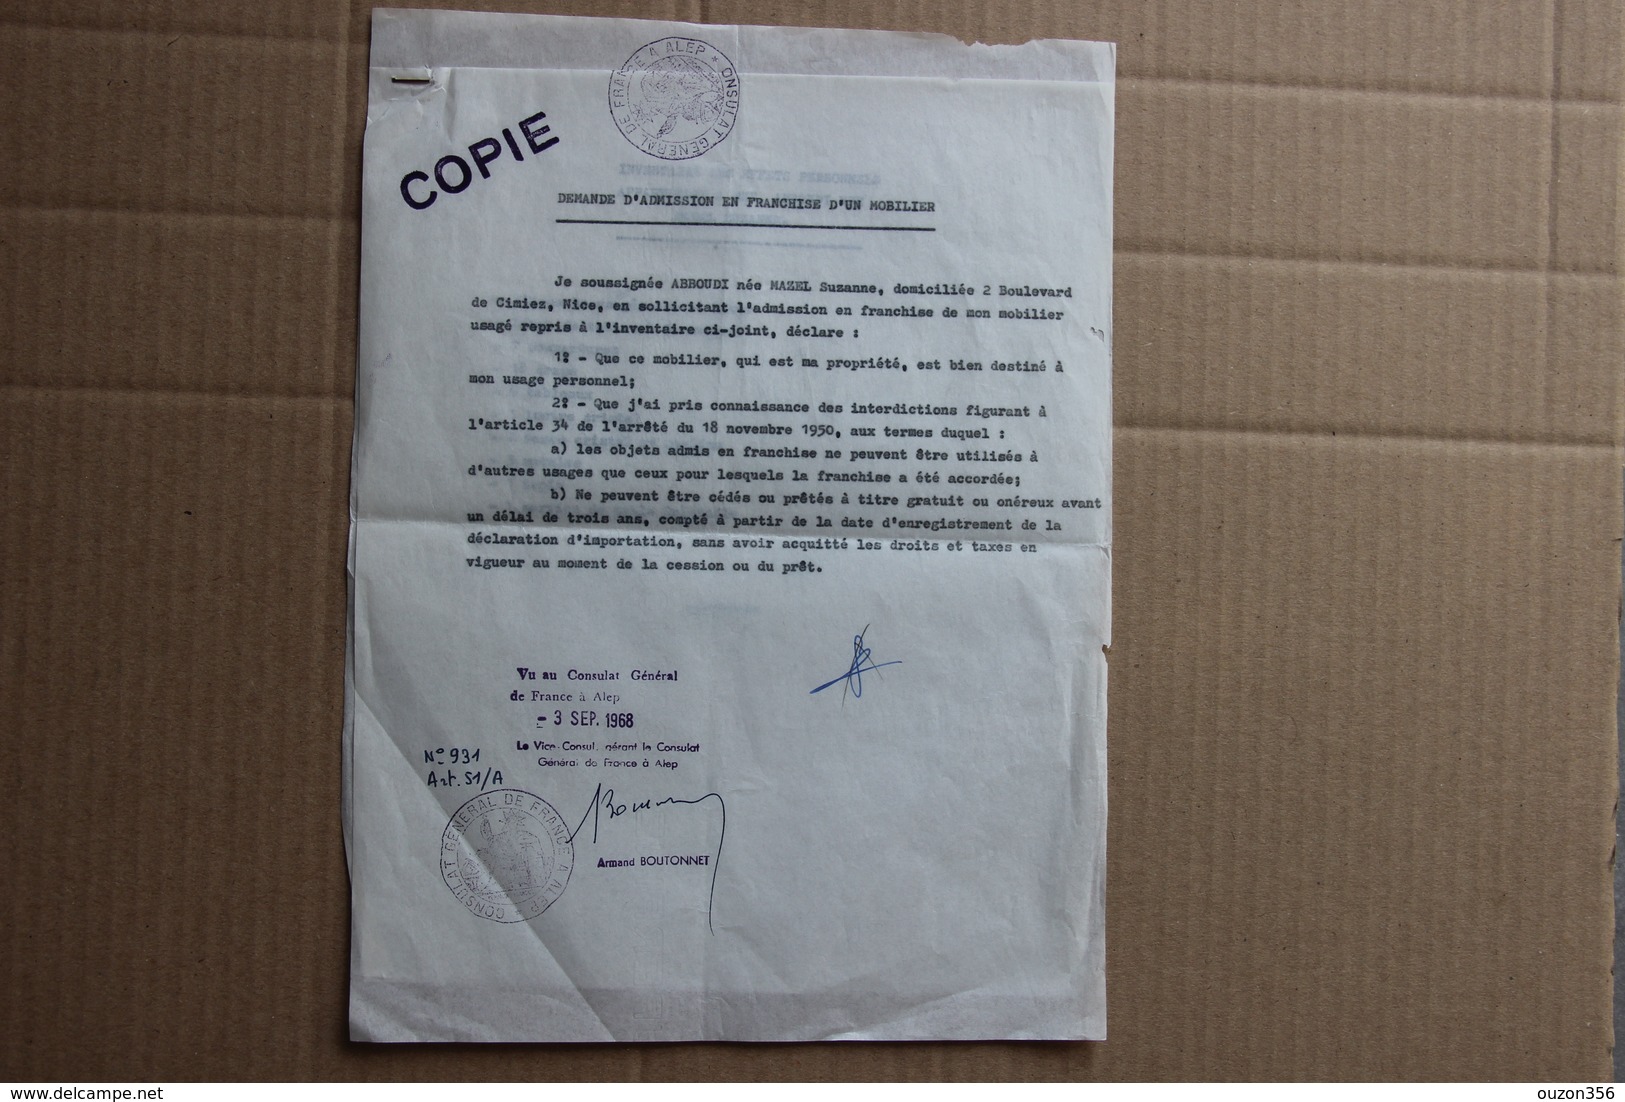 Demande Admission En Franchise Mobilier, Consulat De France à Alep (Syrie), 1968 - Collections